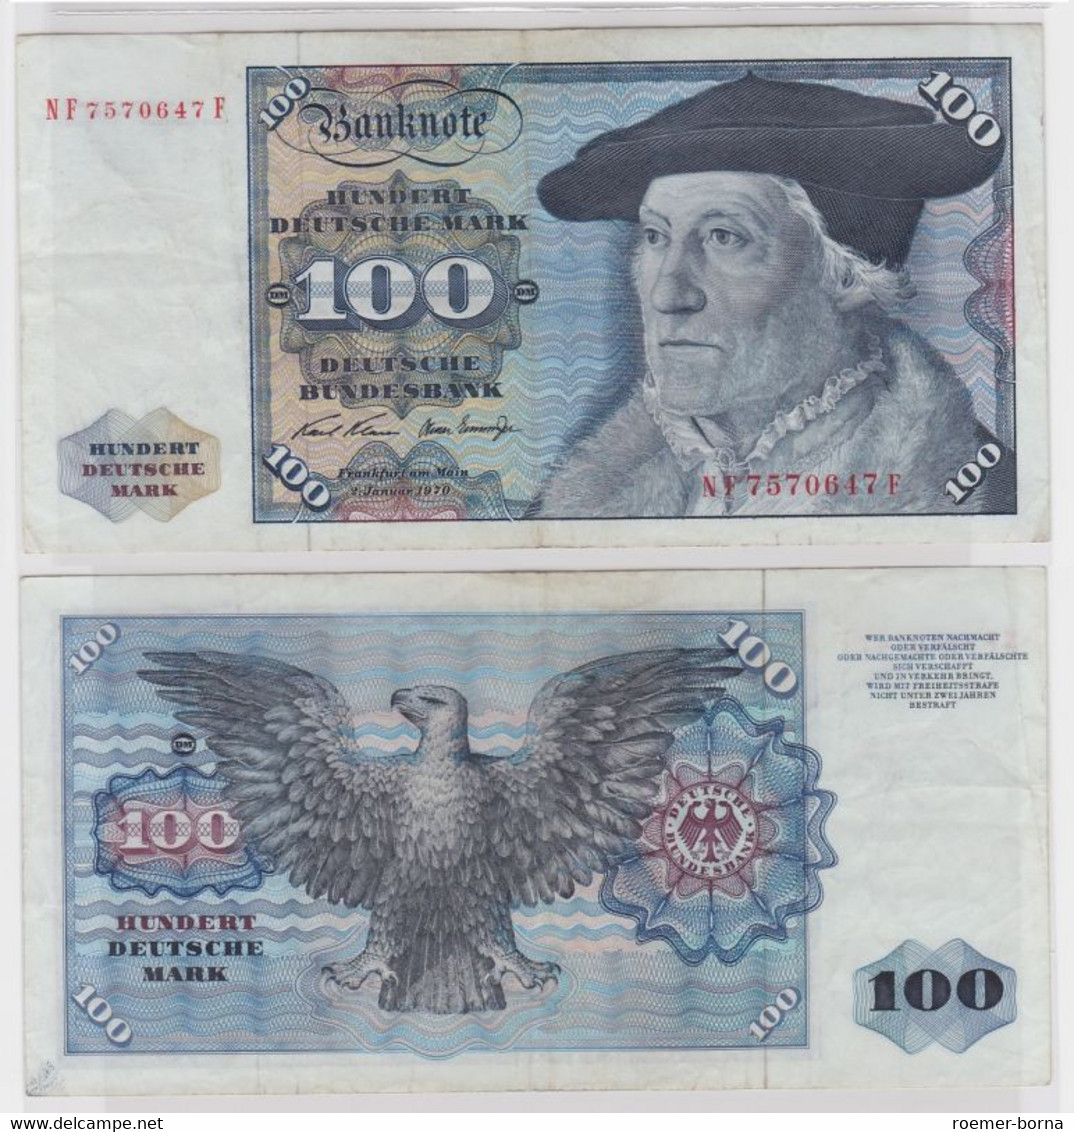 T146310 Banknote 100 DM Deutsche Mark Ro. 273b Schein 2.Jan 1970 KN NF 7570647 F - 100 Deutsche Mark